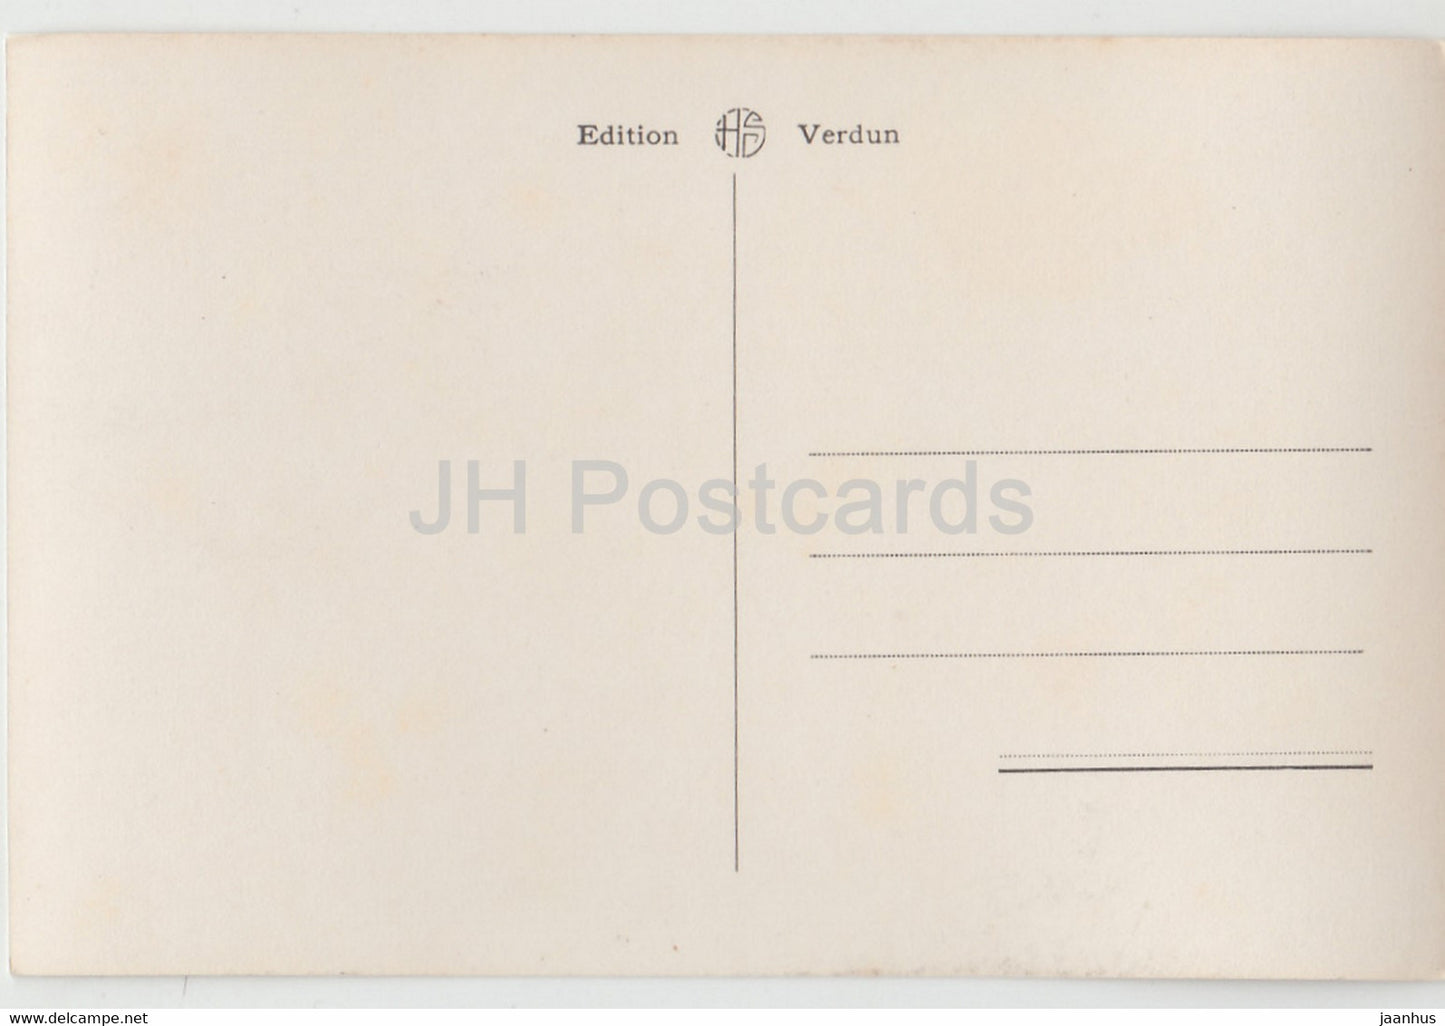 Bois des Caures - Le Poste de Commandement du Colonel Driant - Erster Weltkrieg - Militär - 98 - alte Postkarte - Frankreich - unbenutzt